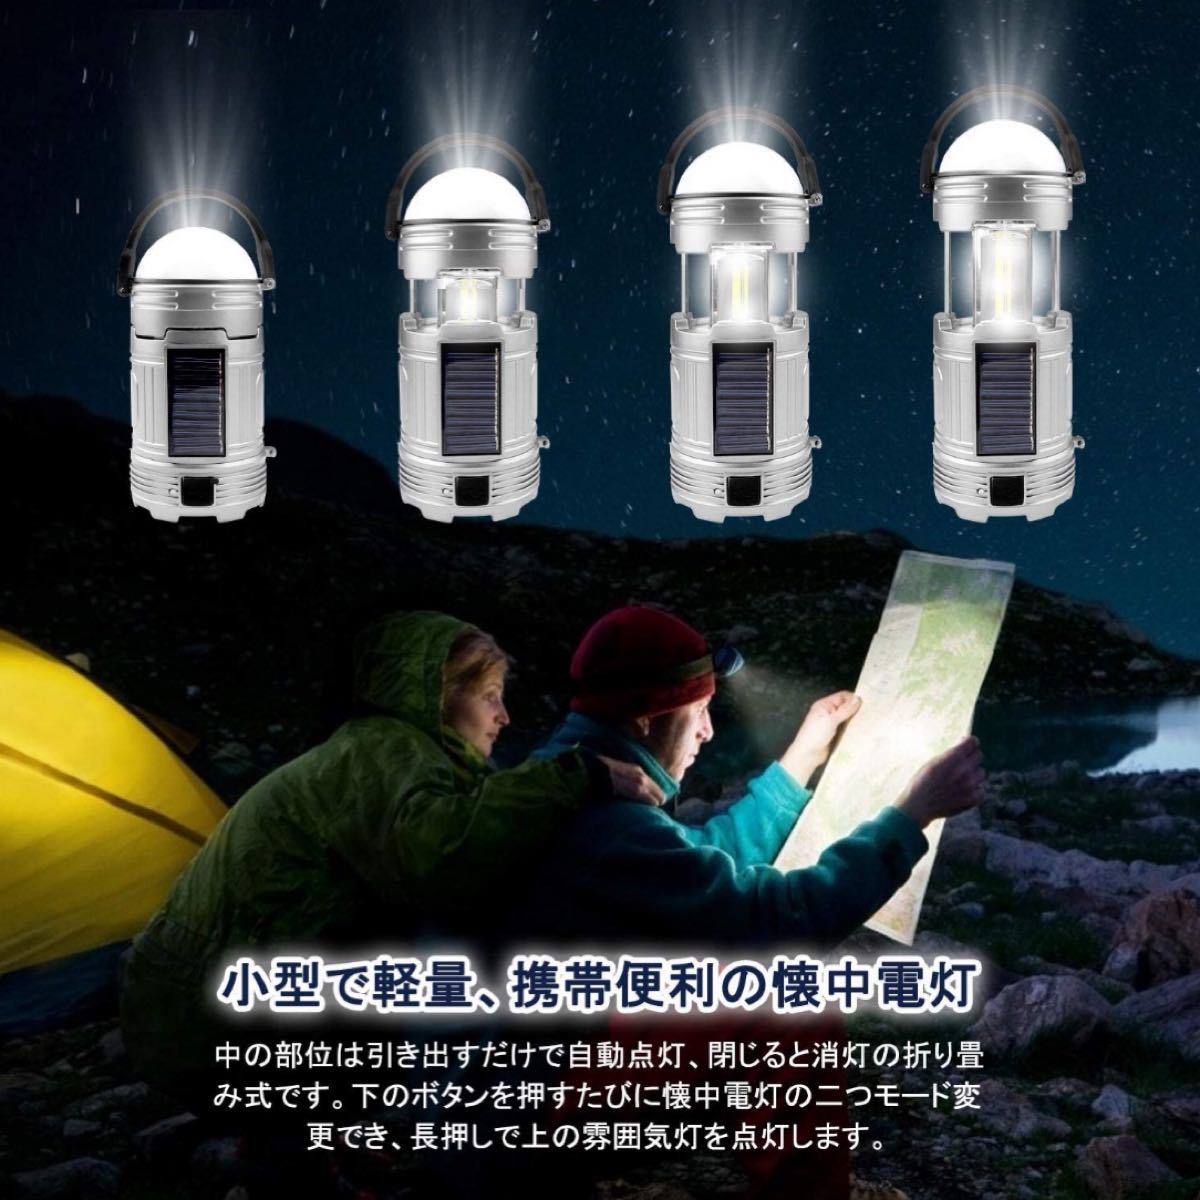 LED ランタン キャンプ ライト 懐中電灯 アウトドア 登山 夜釣り 地震